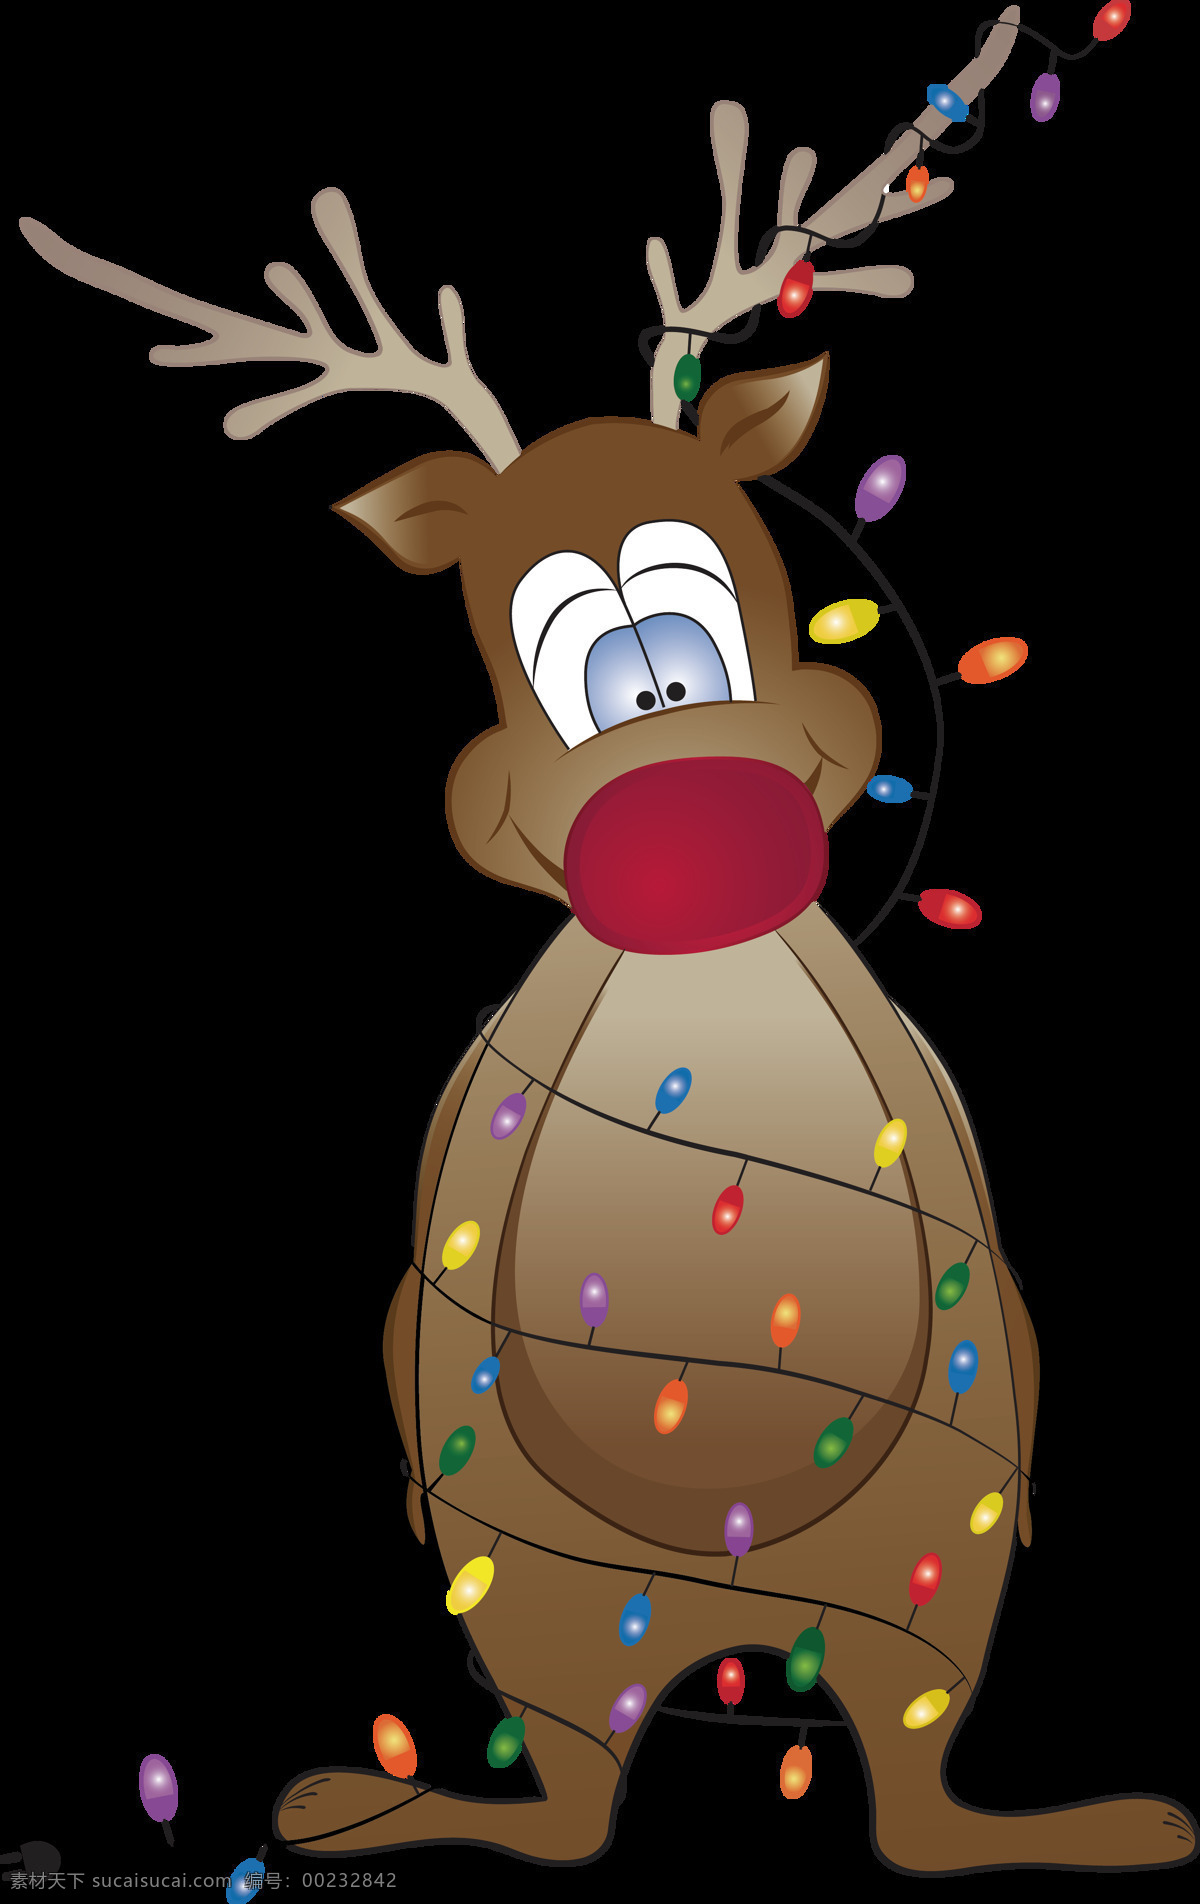 创意 圣诞 彩灯 麋鹿 元素 christmas merry 卡通圣诞元素 麋鹿下载 平安夜 设计素材 圣诞彩灯 圣诞节 圣诞节装饰 圣诞麋鹿 新年快乐